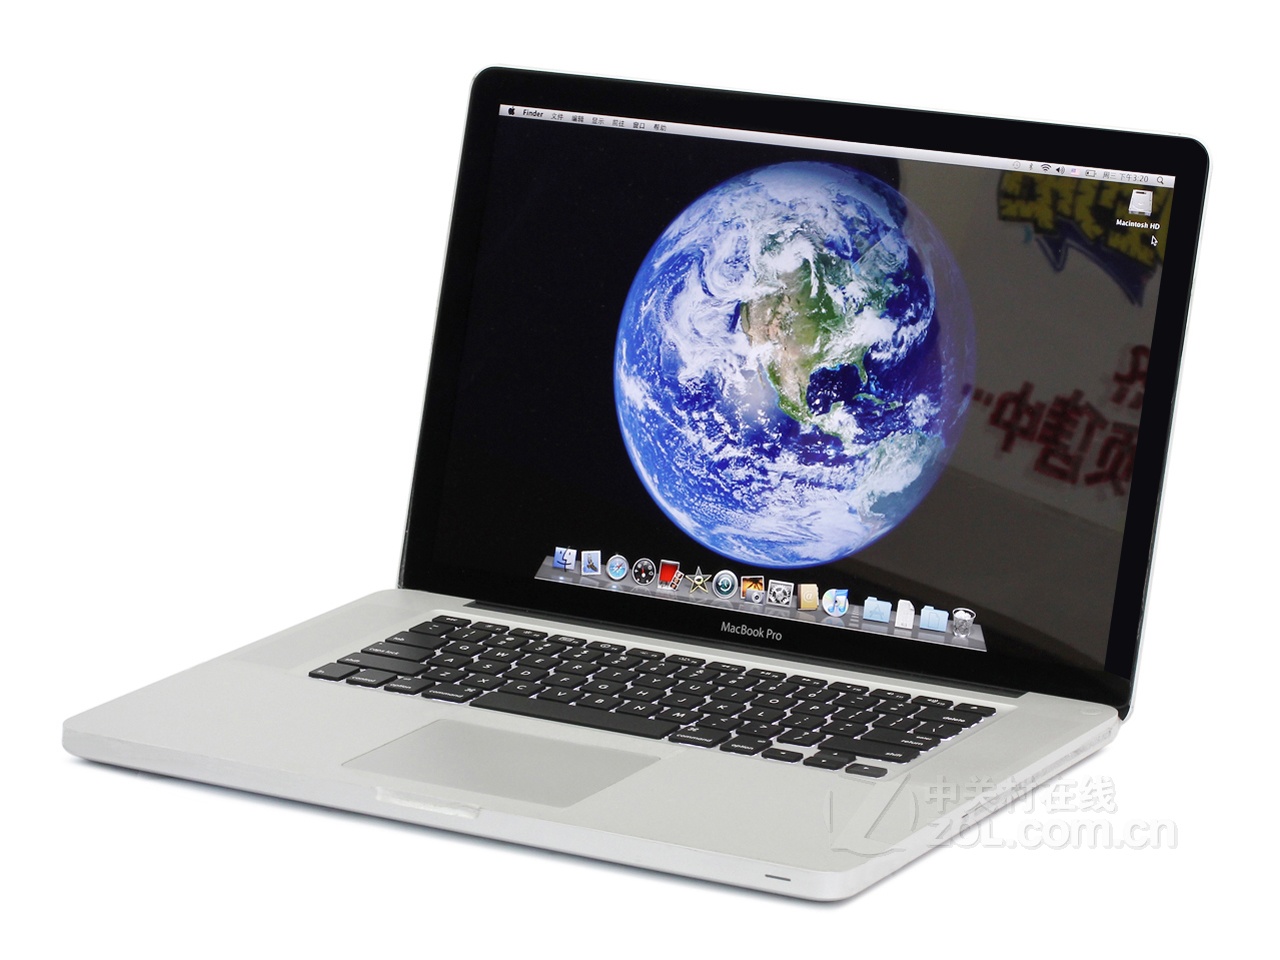 蘋果MacBook Pro(MD104ZP/A)